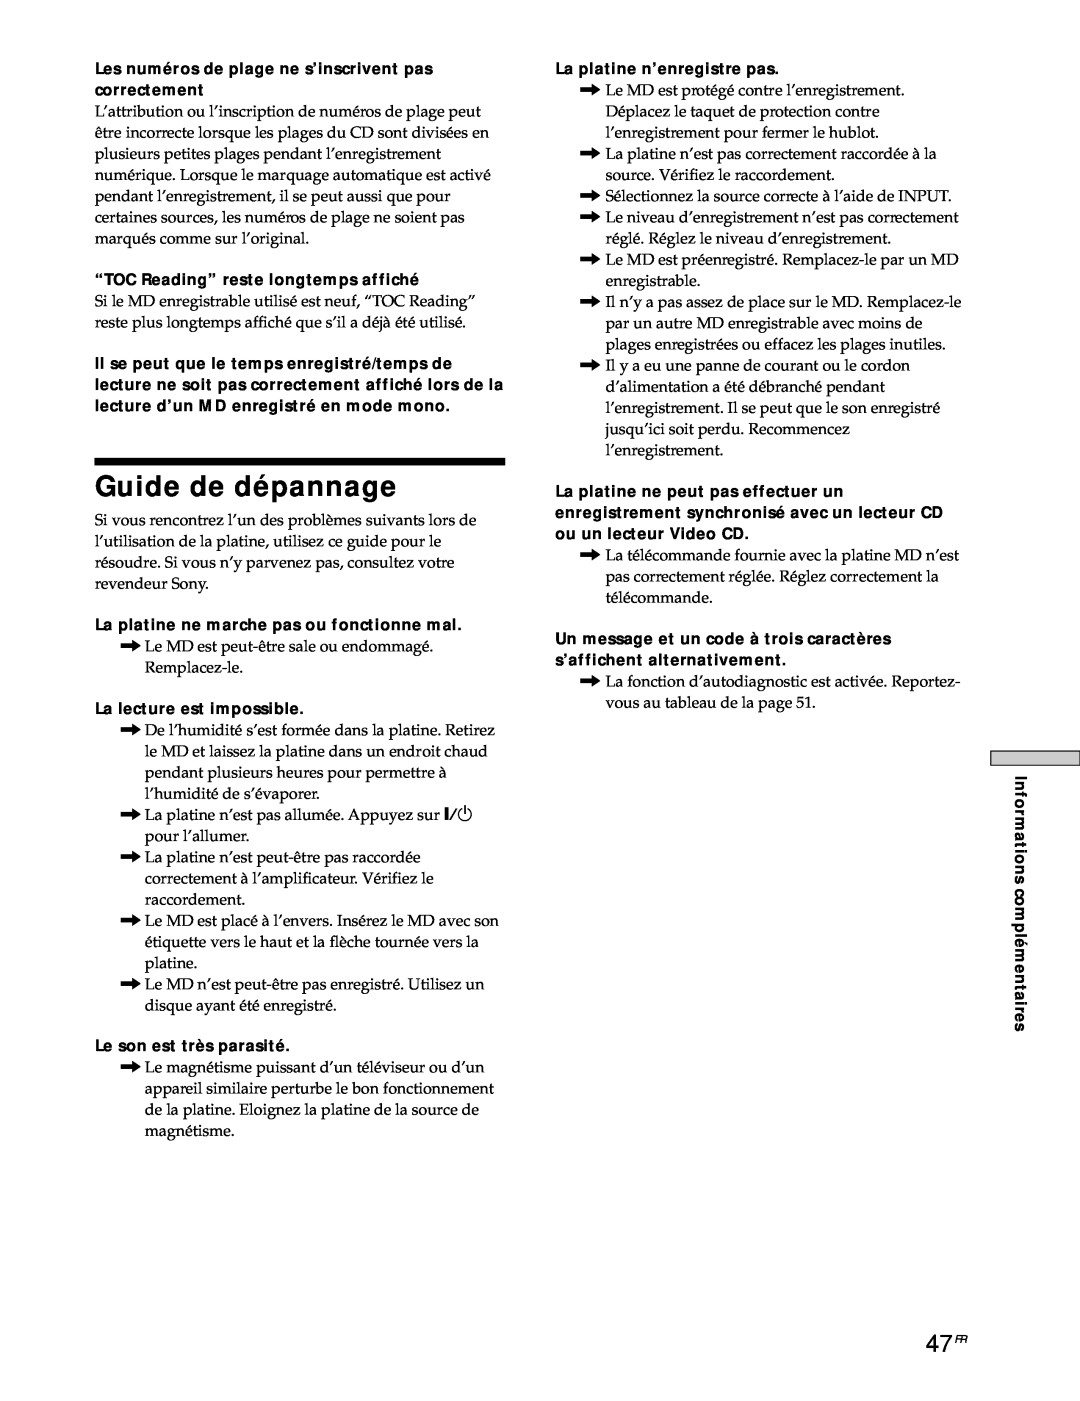 Sony MDS-JE530 manual Guide de dépannage, 47FR 